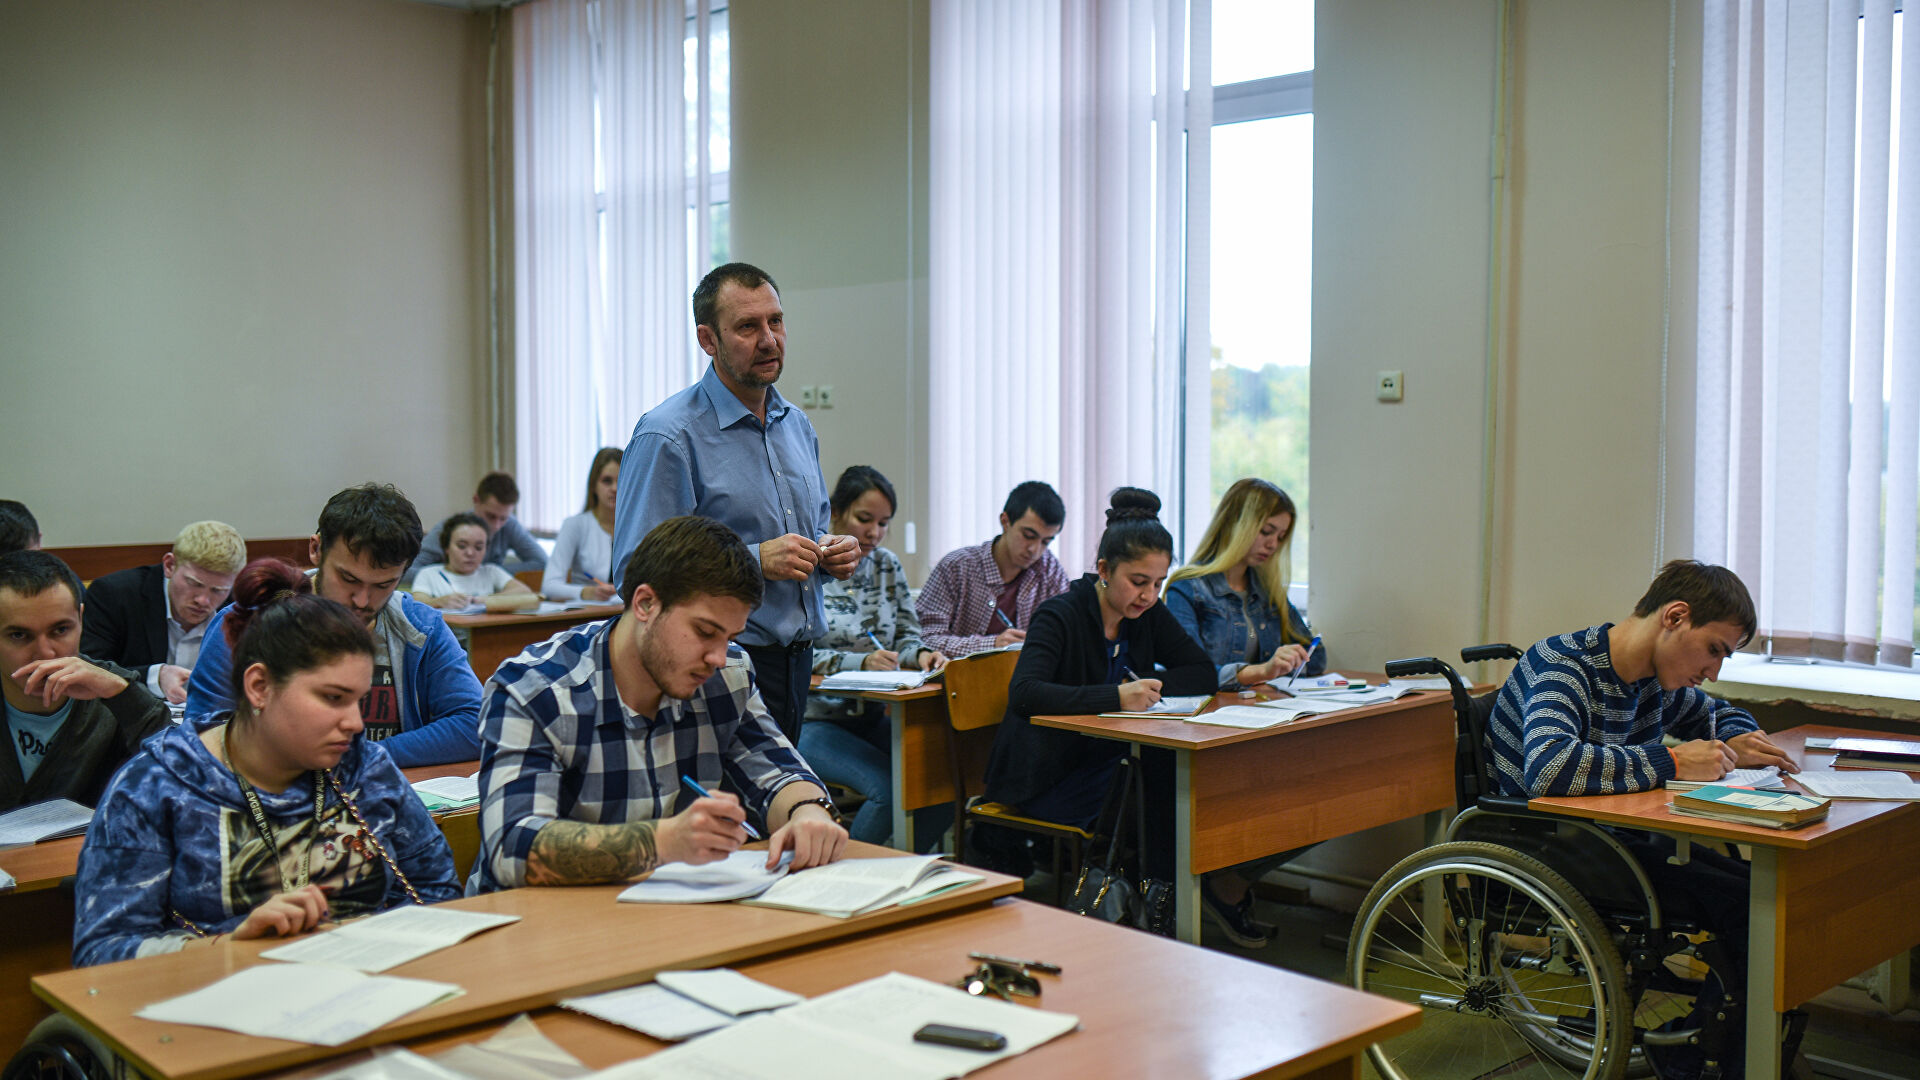 Развитие инклюзивного образования обсудят в Москве эксперты со всего мира